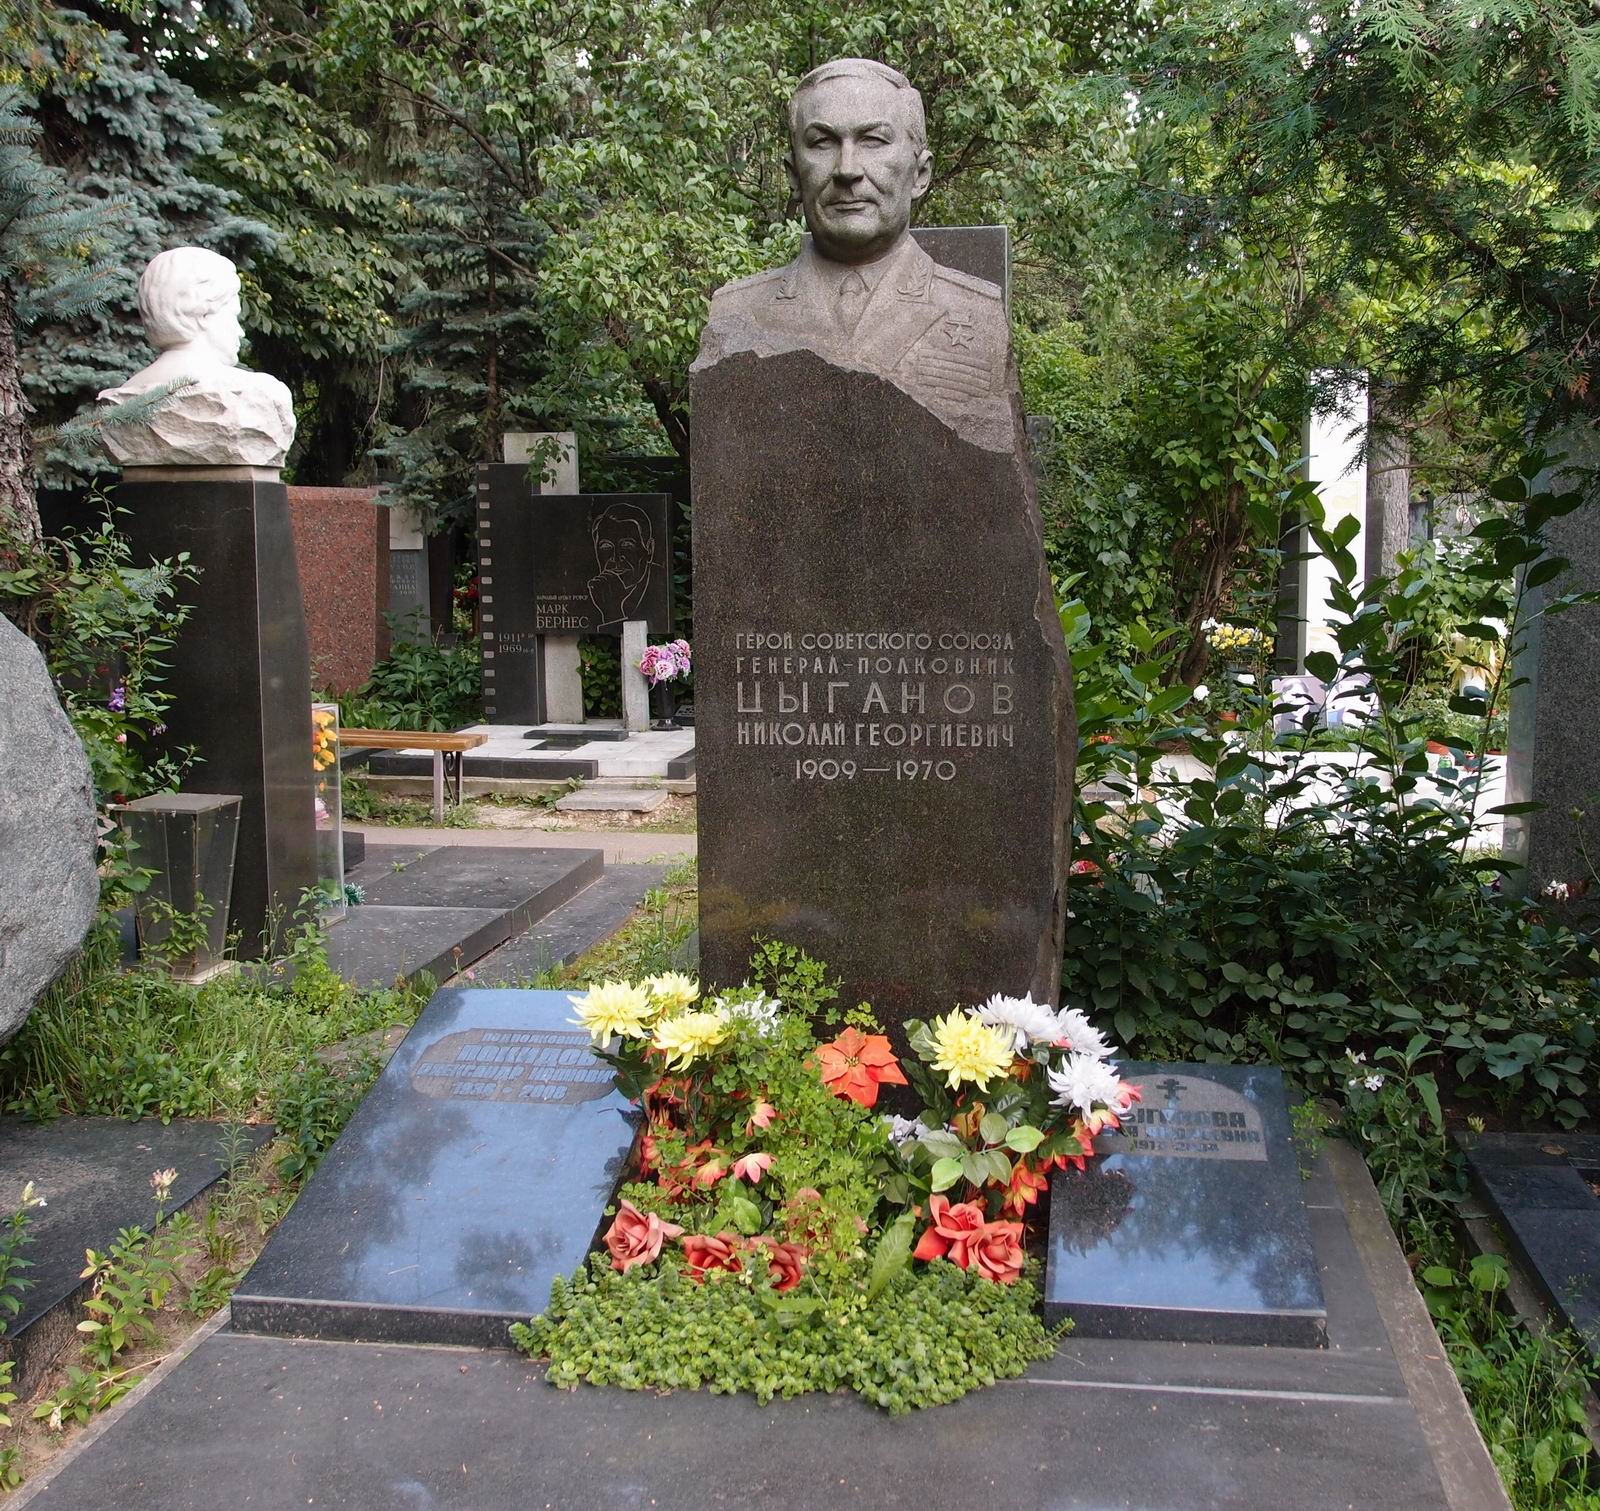 Памятник на могиле Цыганова Н.Г. (1909-1970), на Новодевичьем кладбище (7-10-10). Нажмите левую кнопку мыши чтобы увидеть фрагмент памятника.